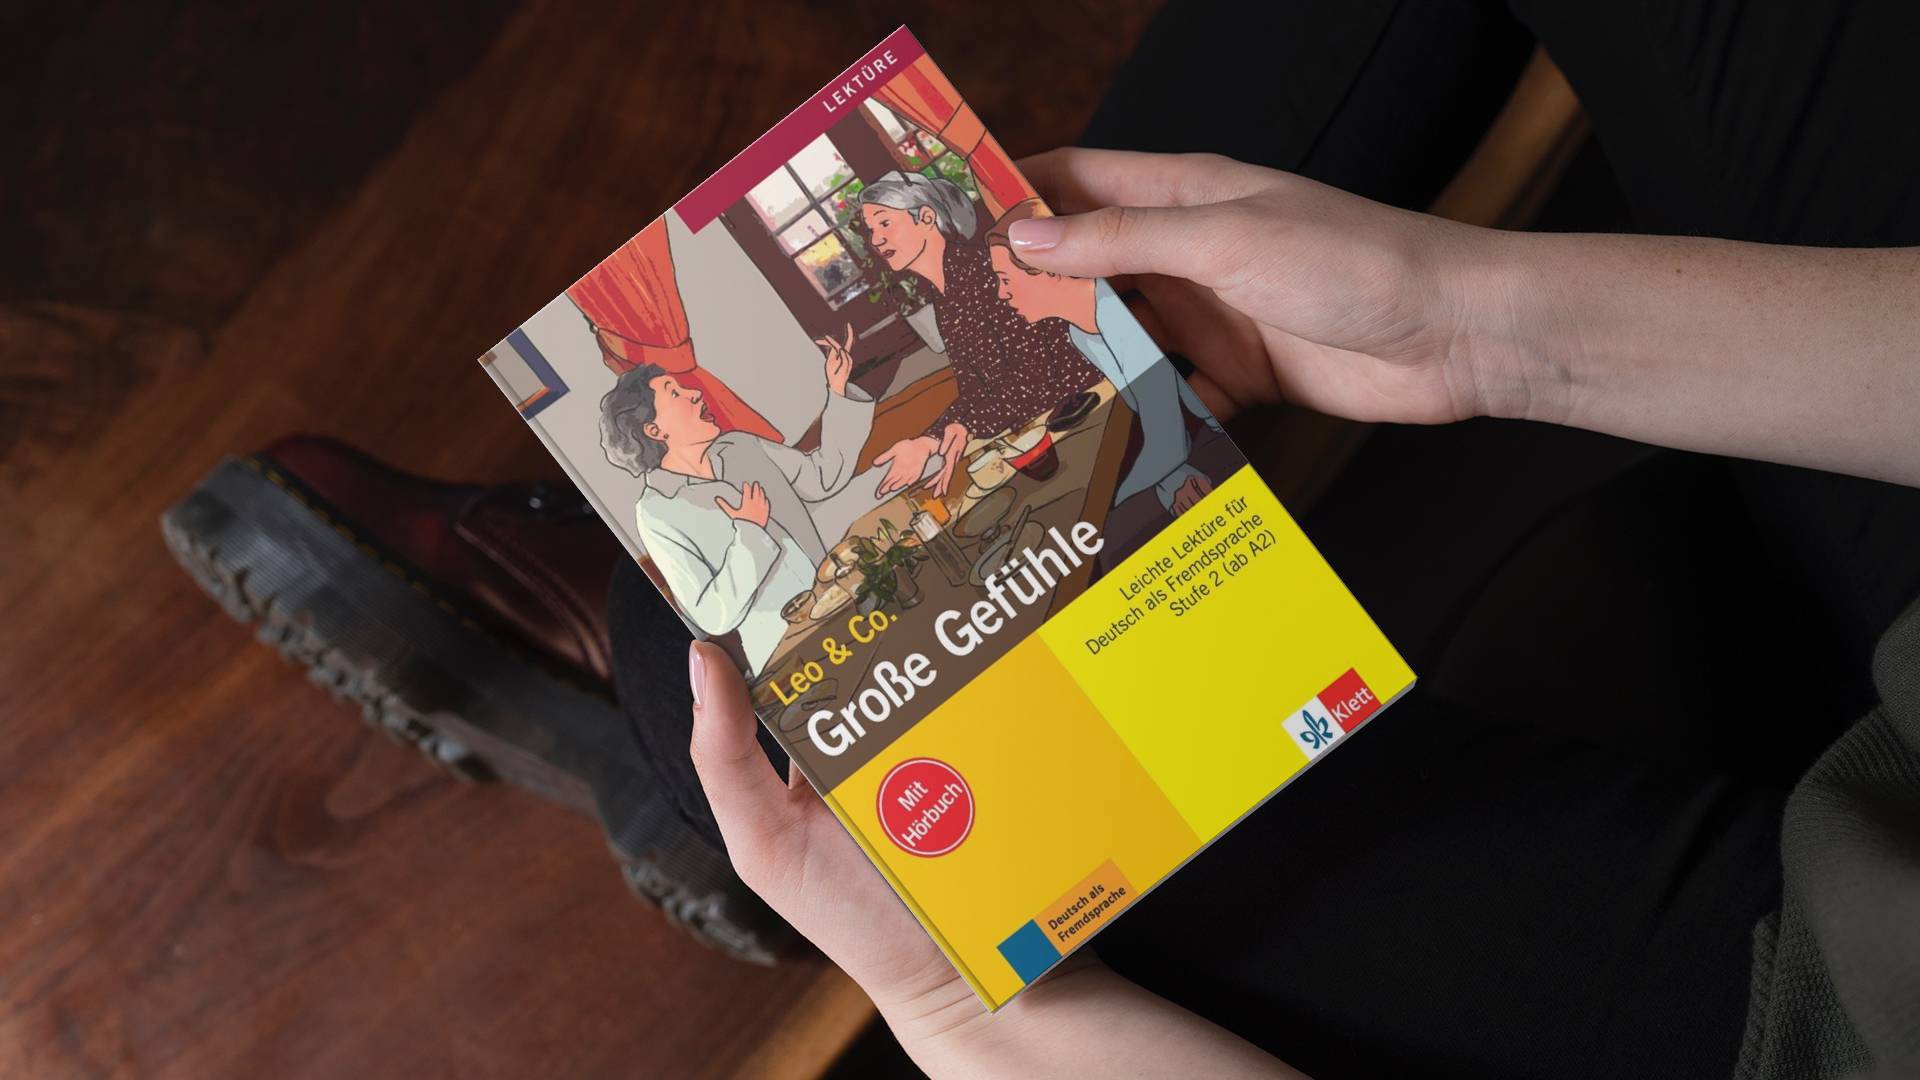 خرید کتاب زبان | زبان استور | Grosse Gefuhle | کتاب داستان زبان آلمانی